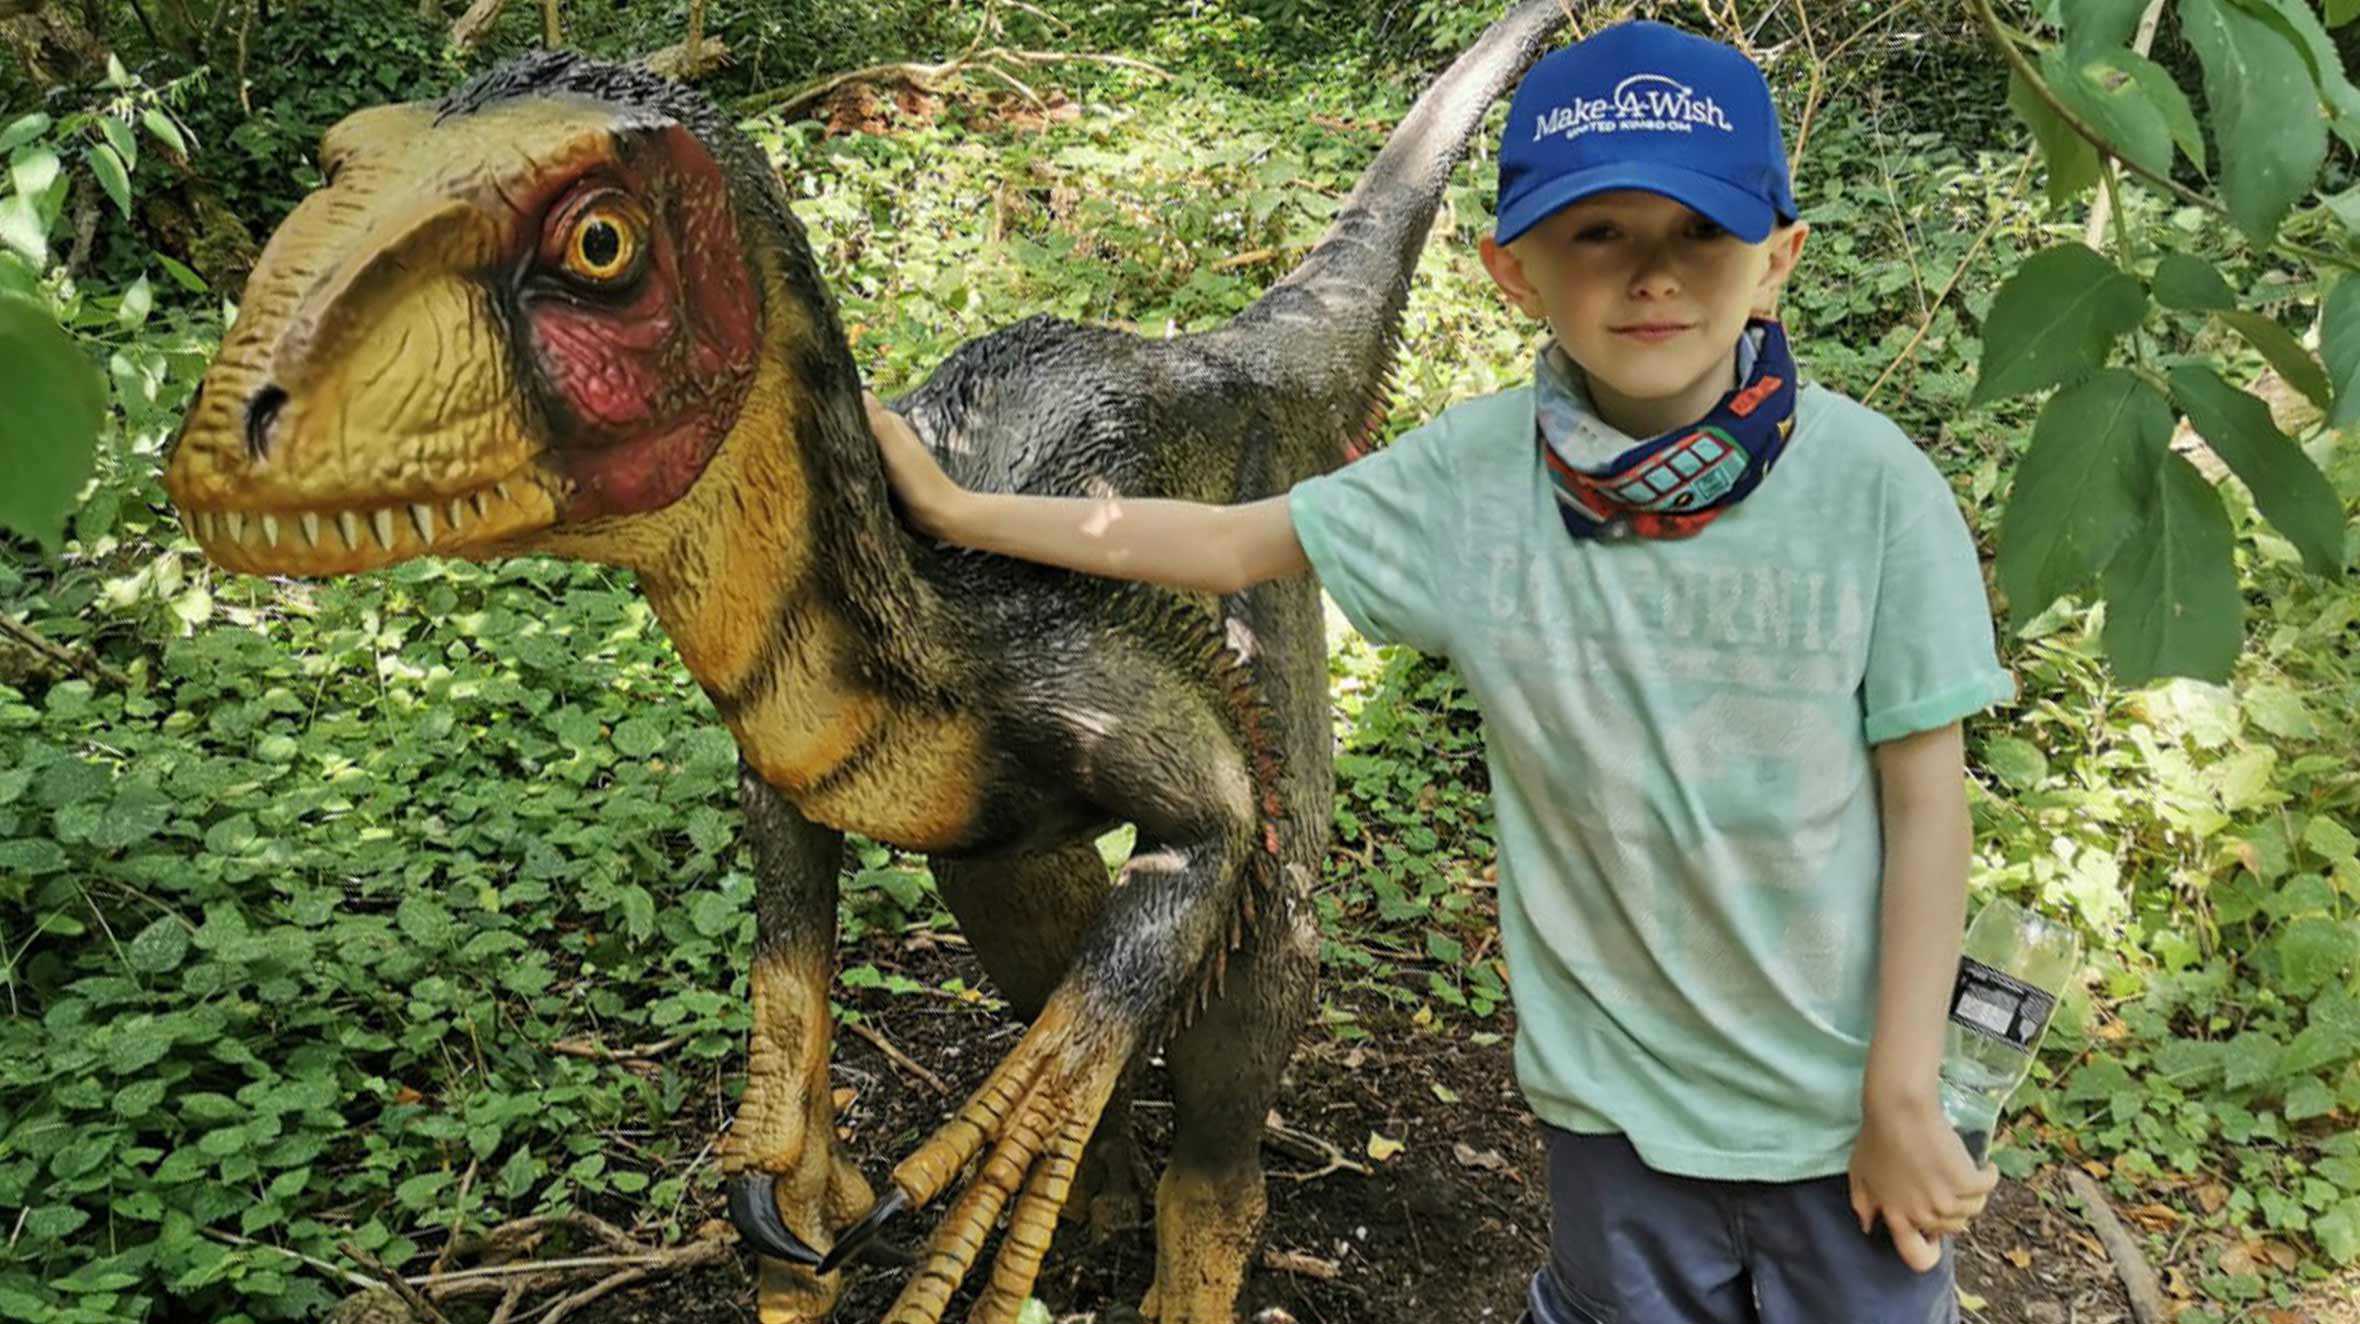 Caden standing next to a dinosaur